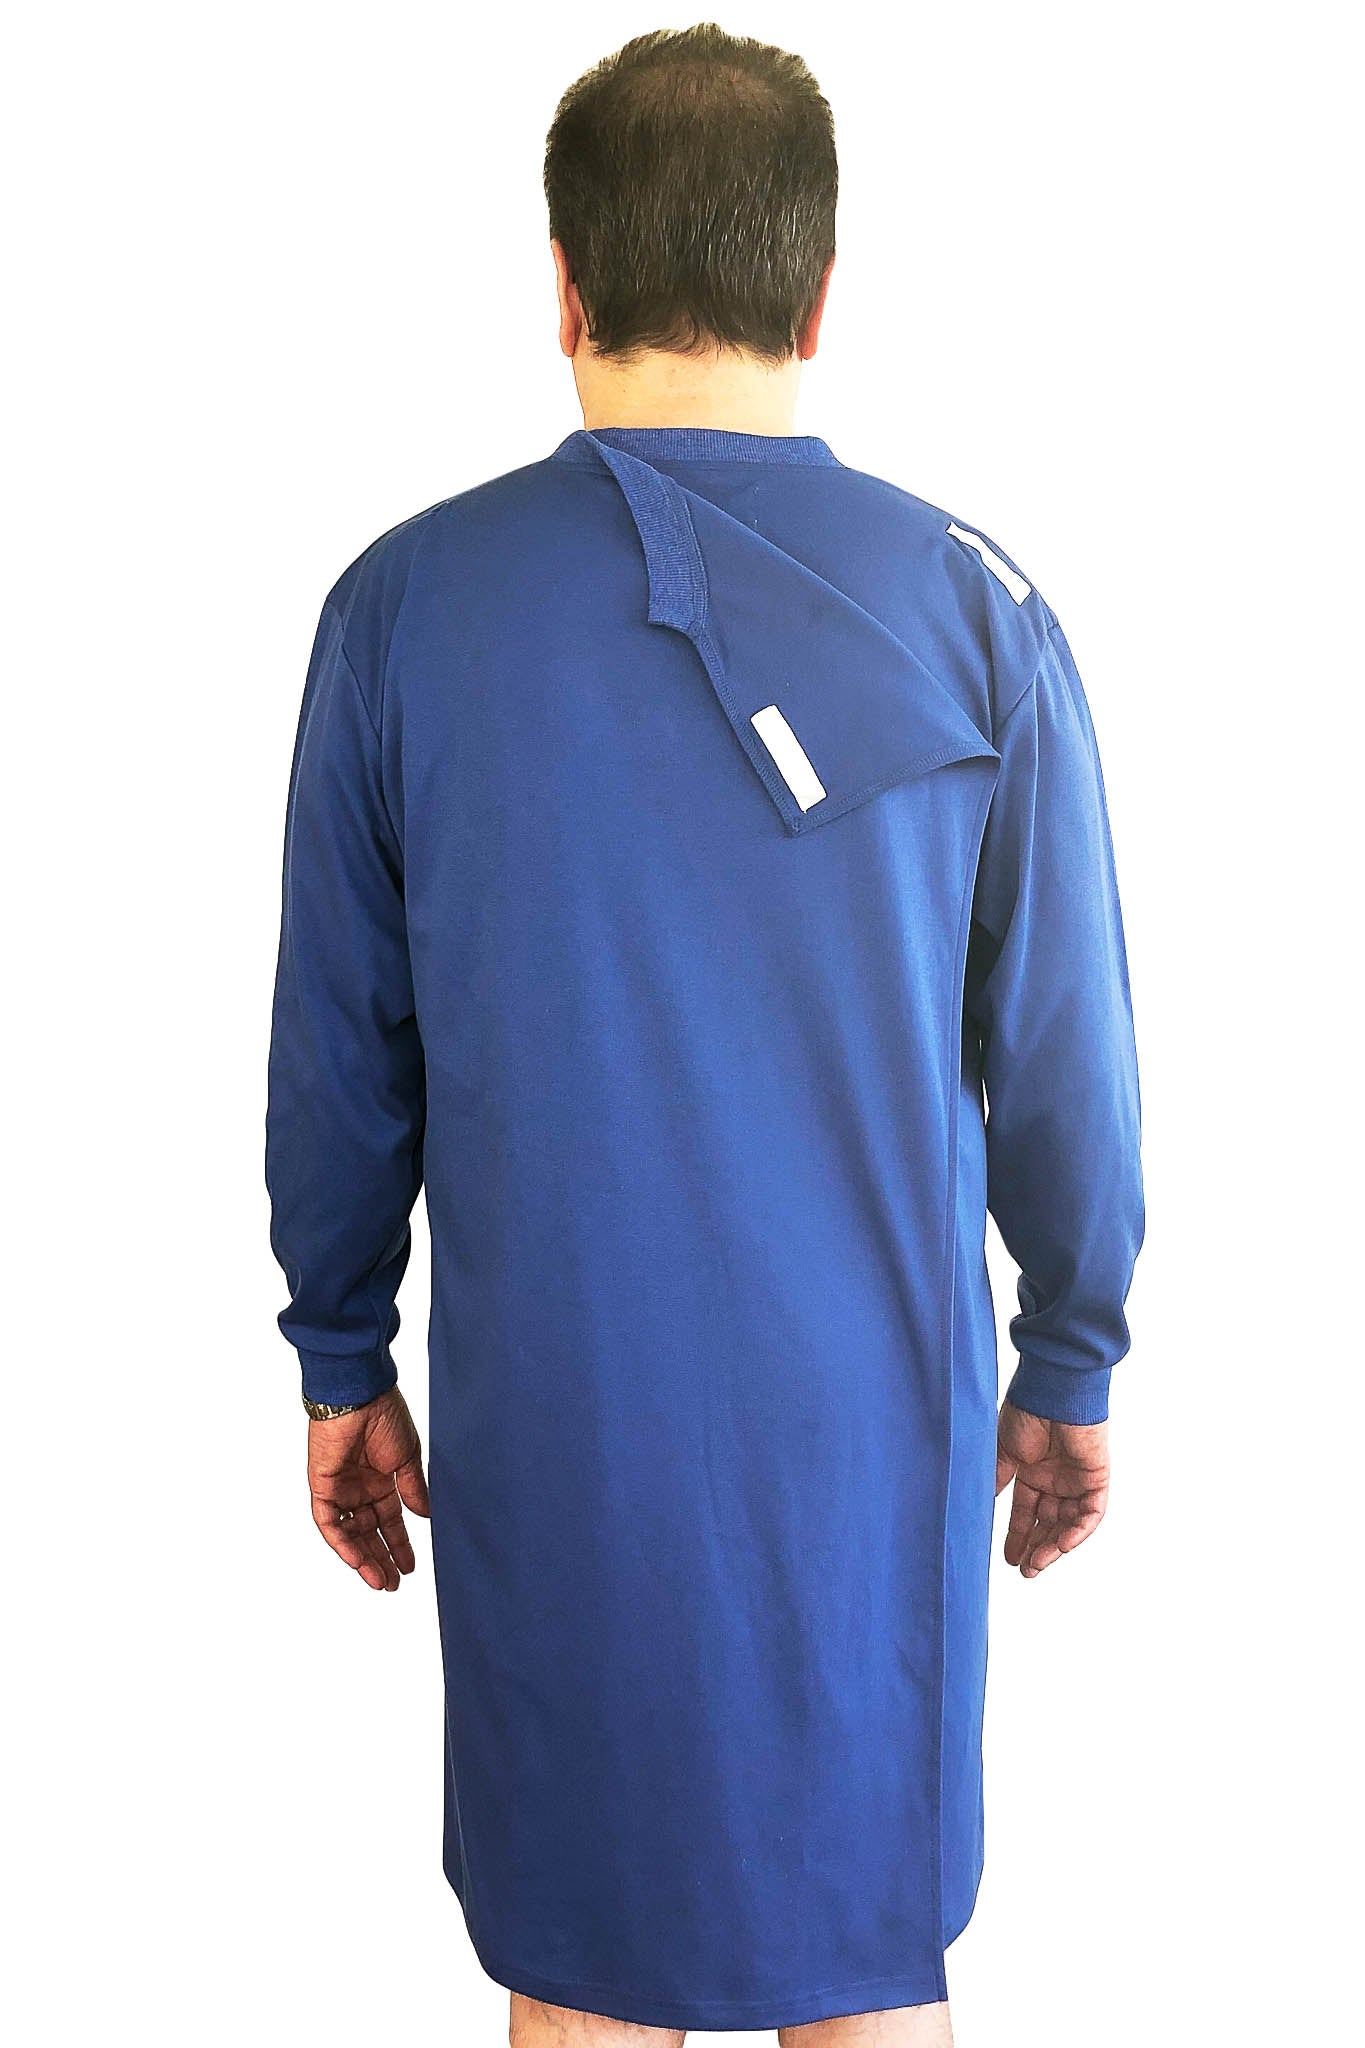 Chemise de nuit pour Hommes - Bleue | Felix | Vêtements Adaptés